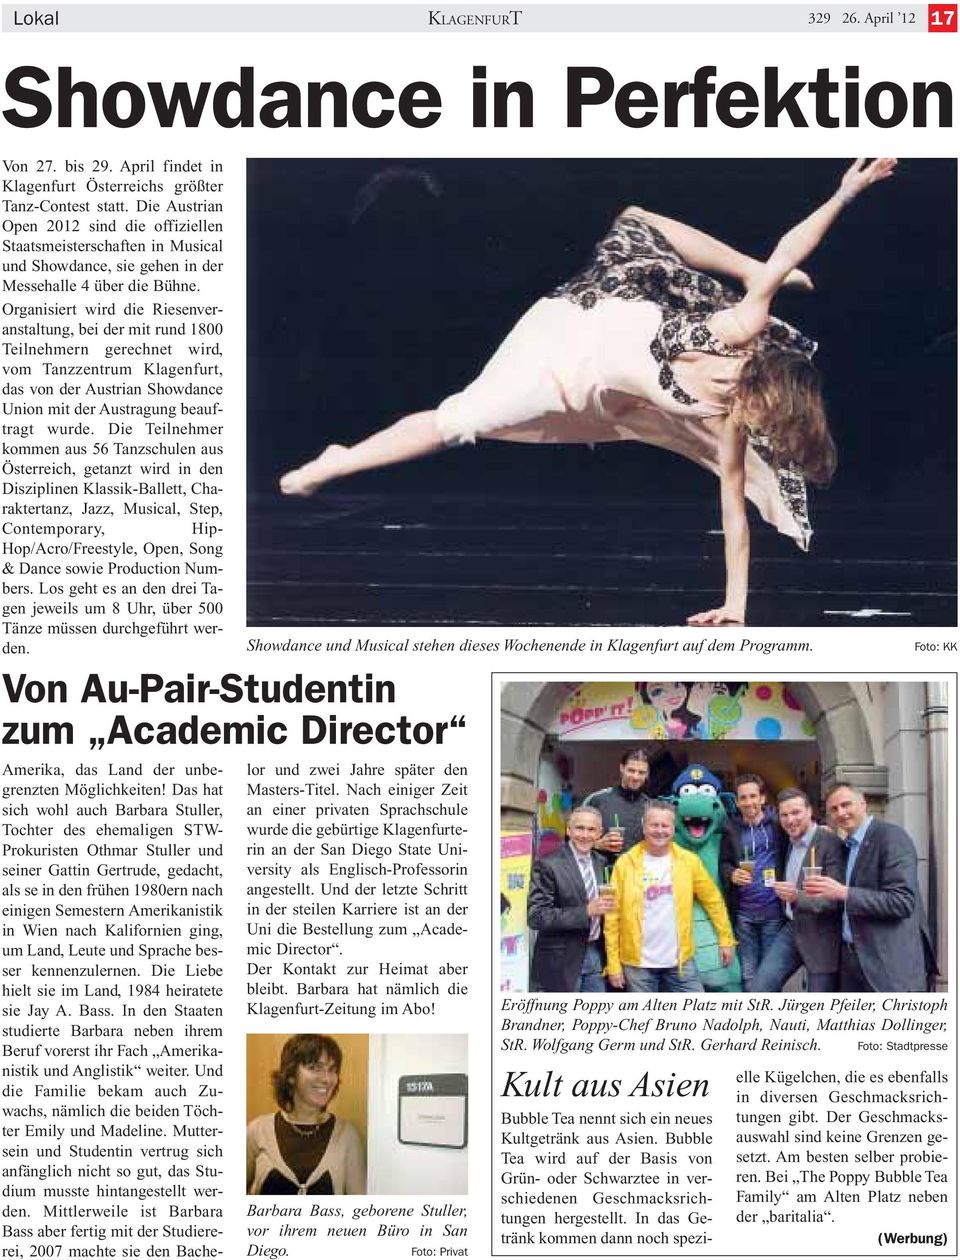 Organisiert wird die Riesenveranstaltung, bei der mit rund 1800 Teilnehmern gerechnet wird, vom Tanzzentrum Klagenfurt, das von der Austrian Showdance Union mit der Austragung beauftragt wurde.